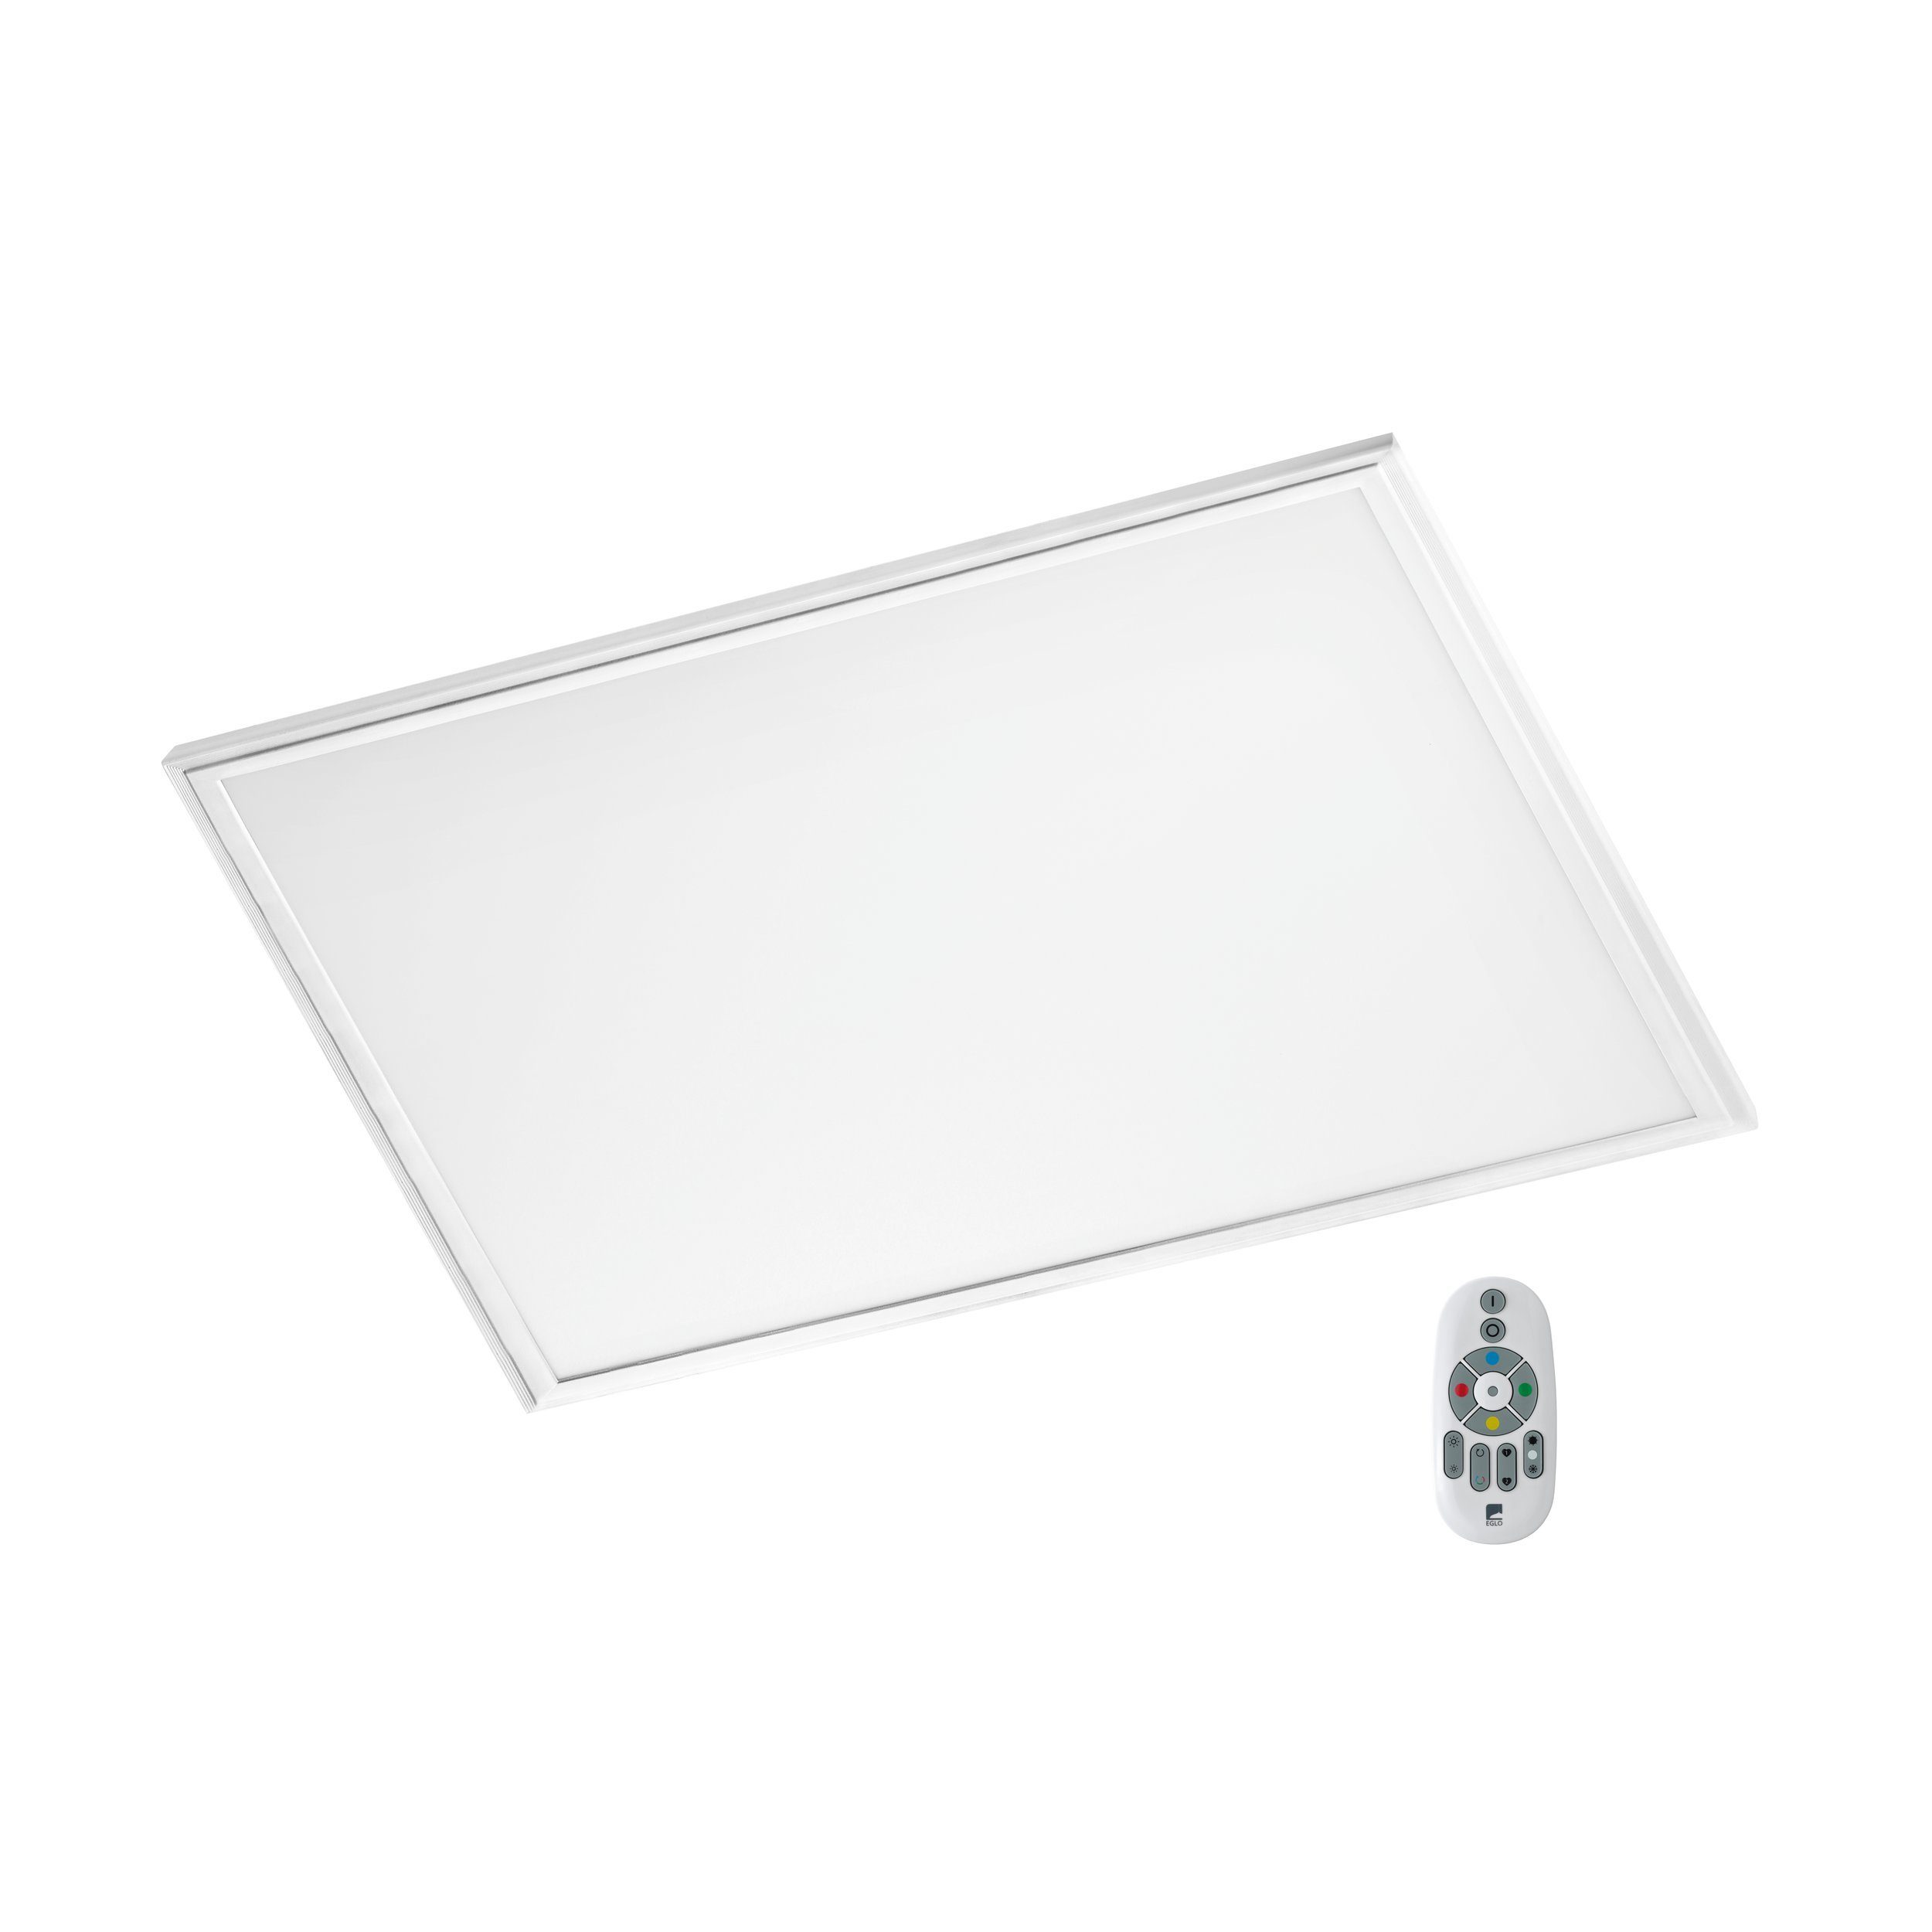 EGLO LED Panel Salobrena-c, Leuchtmittel inklusive, Panel, Deckenlampe, Weiß, 62x62 cm, Weißtöne u. Farben einstellbar